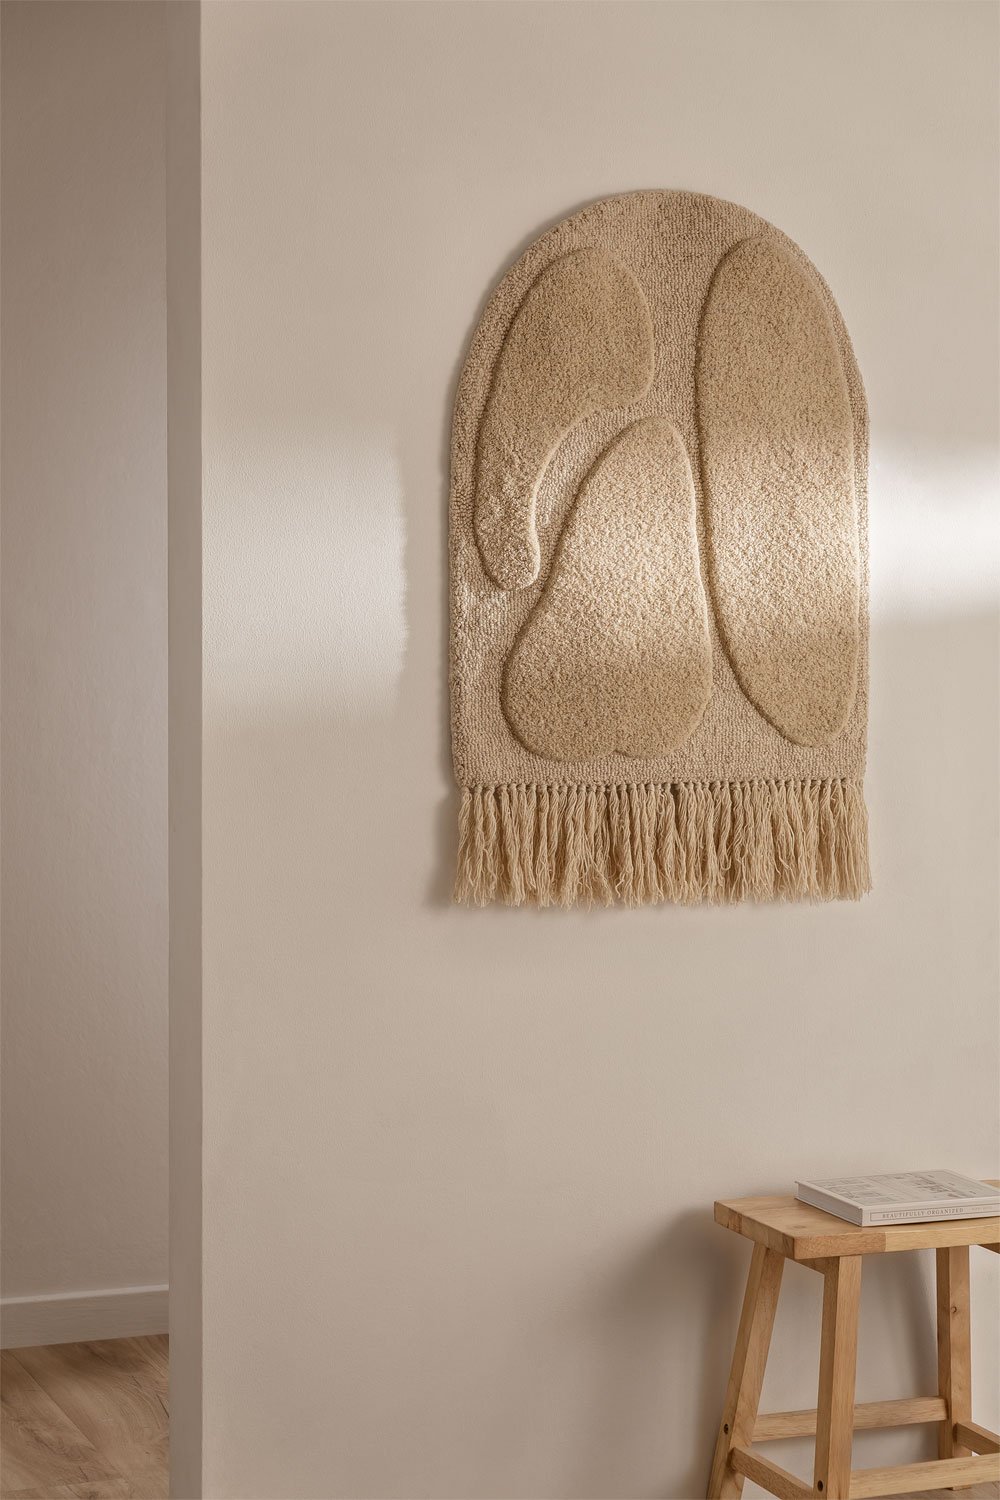 Decoratief wandtapijt in wol Ramses, galerij beeld 1